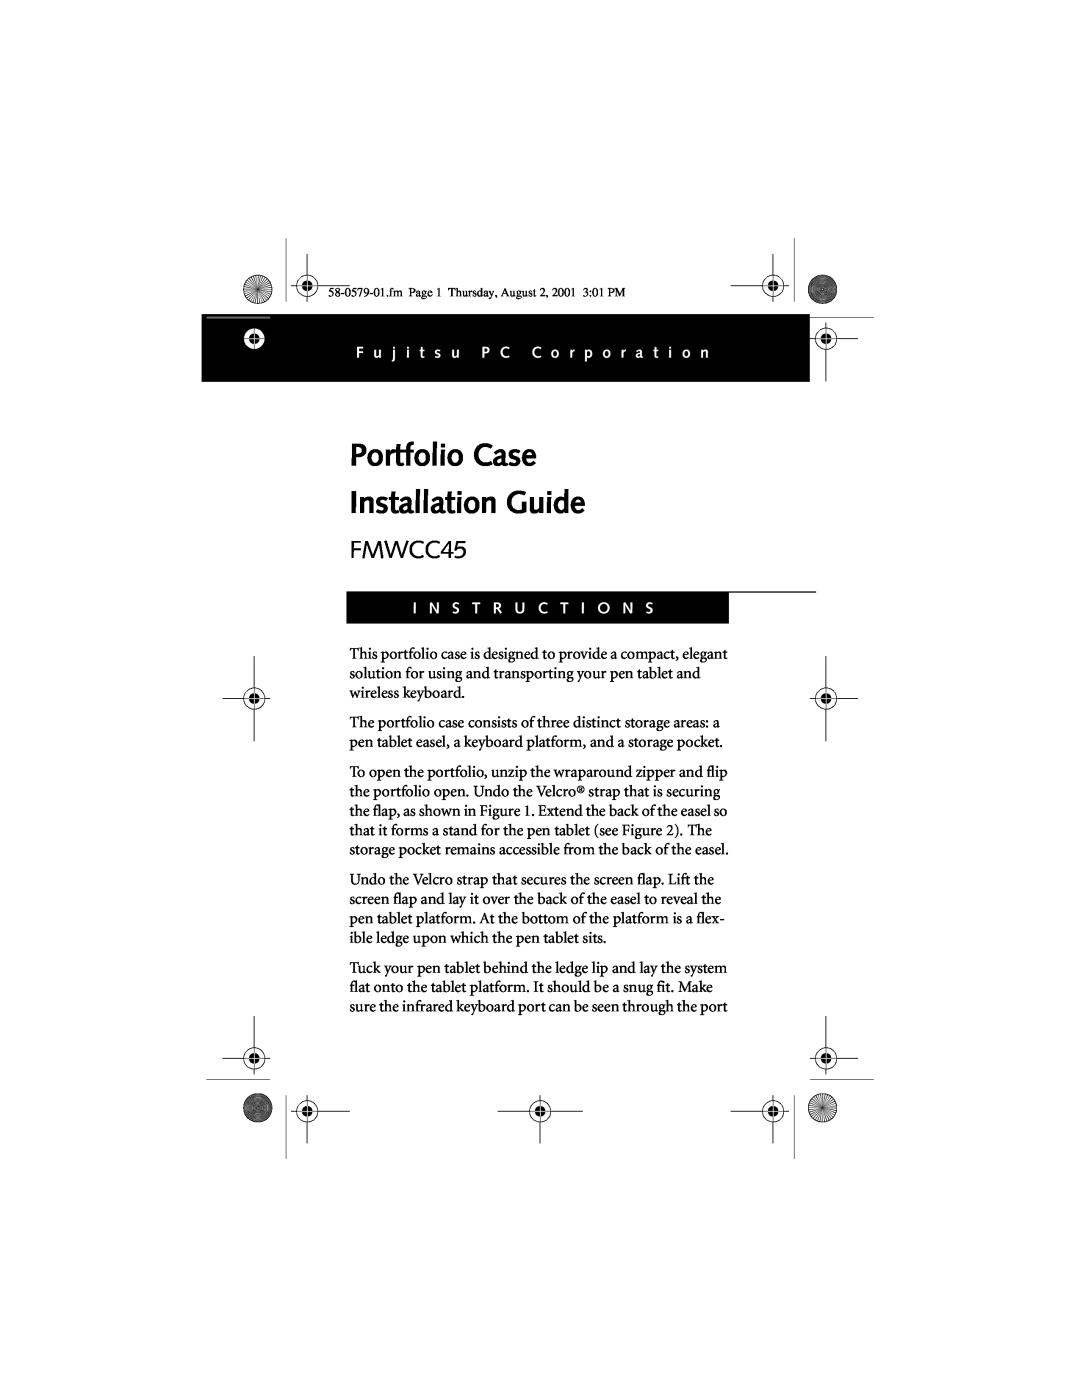 Fujitsu FMWCC45 manual Portfolio Case Installation Guide, F u j i t s u P C C o r p o r a t i o n, I N S T R U C T I O N S 